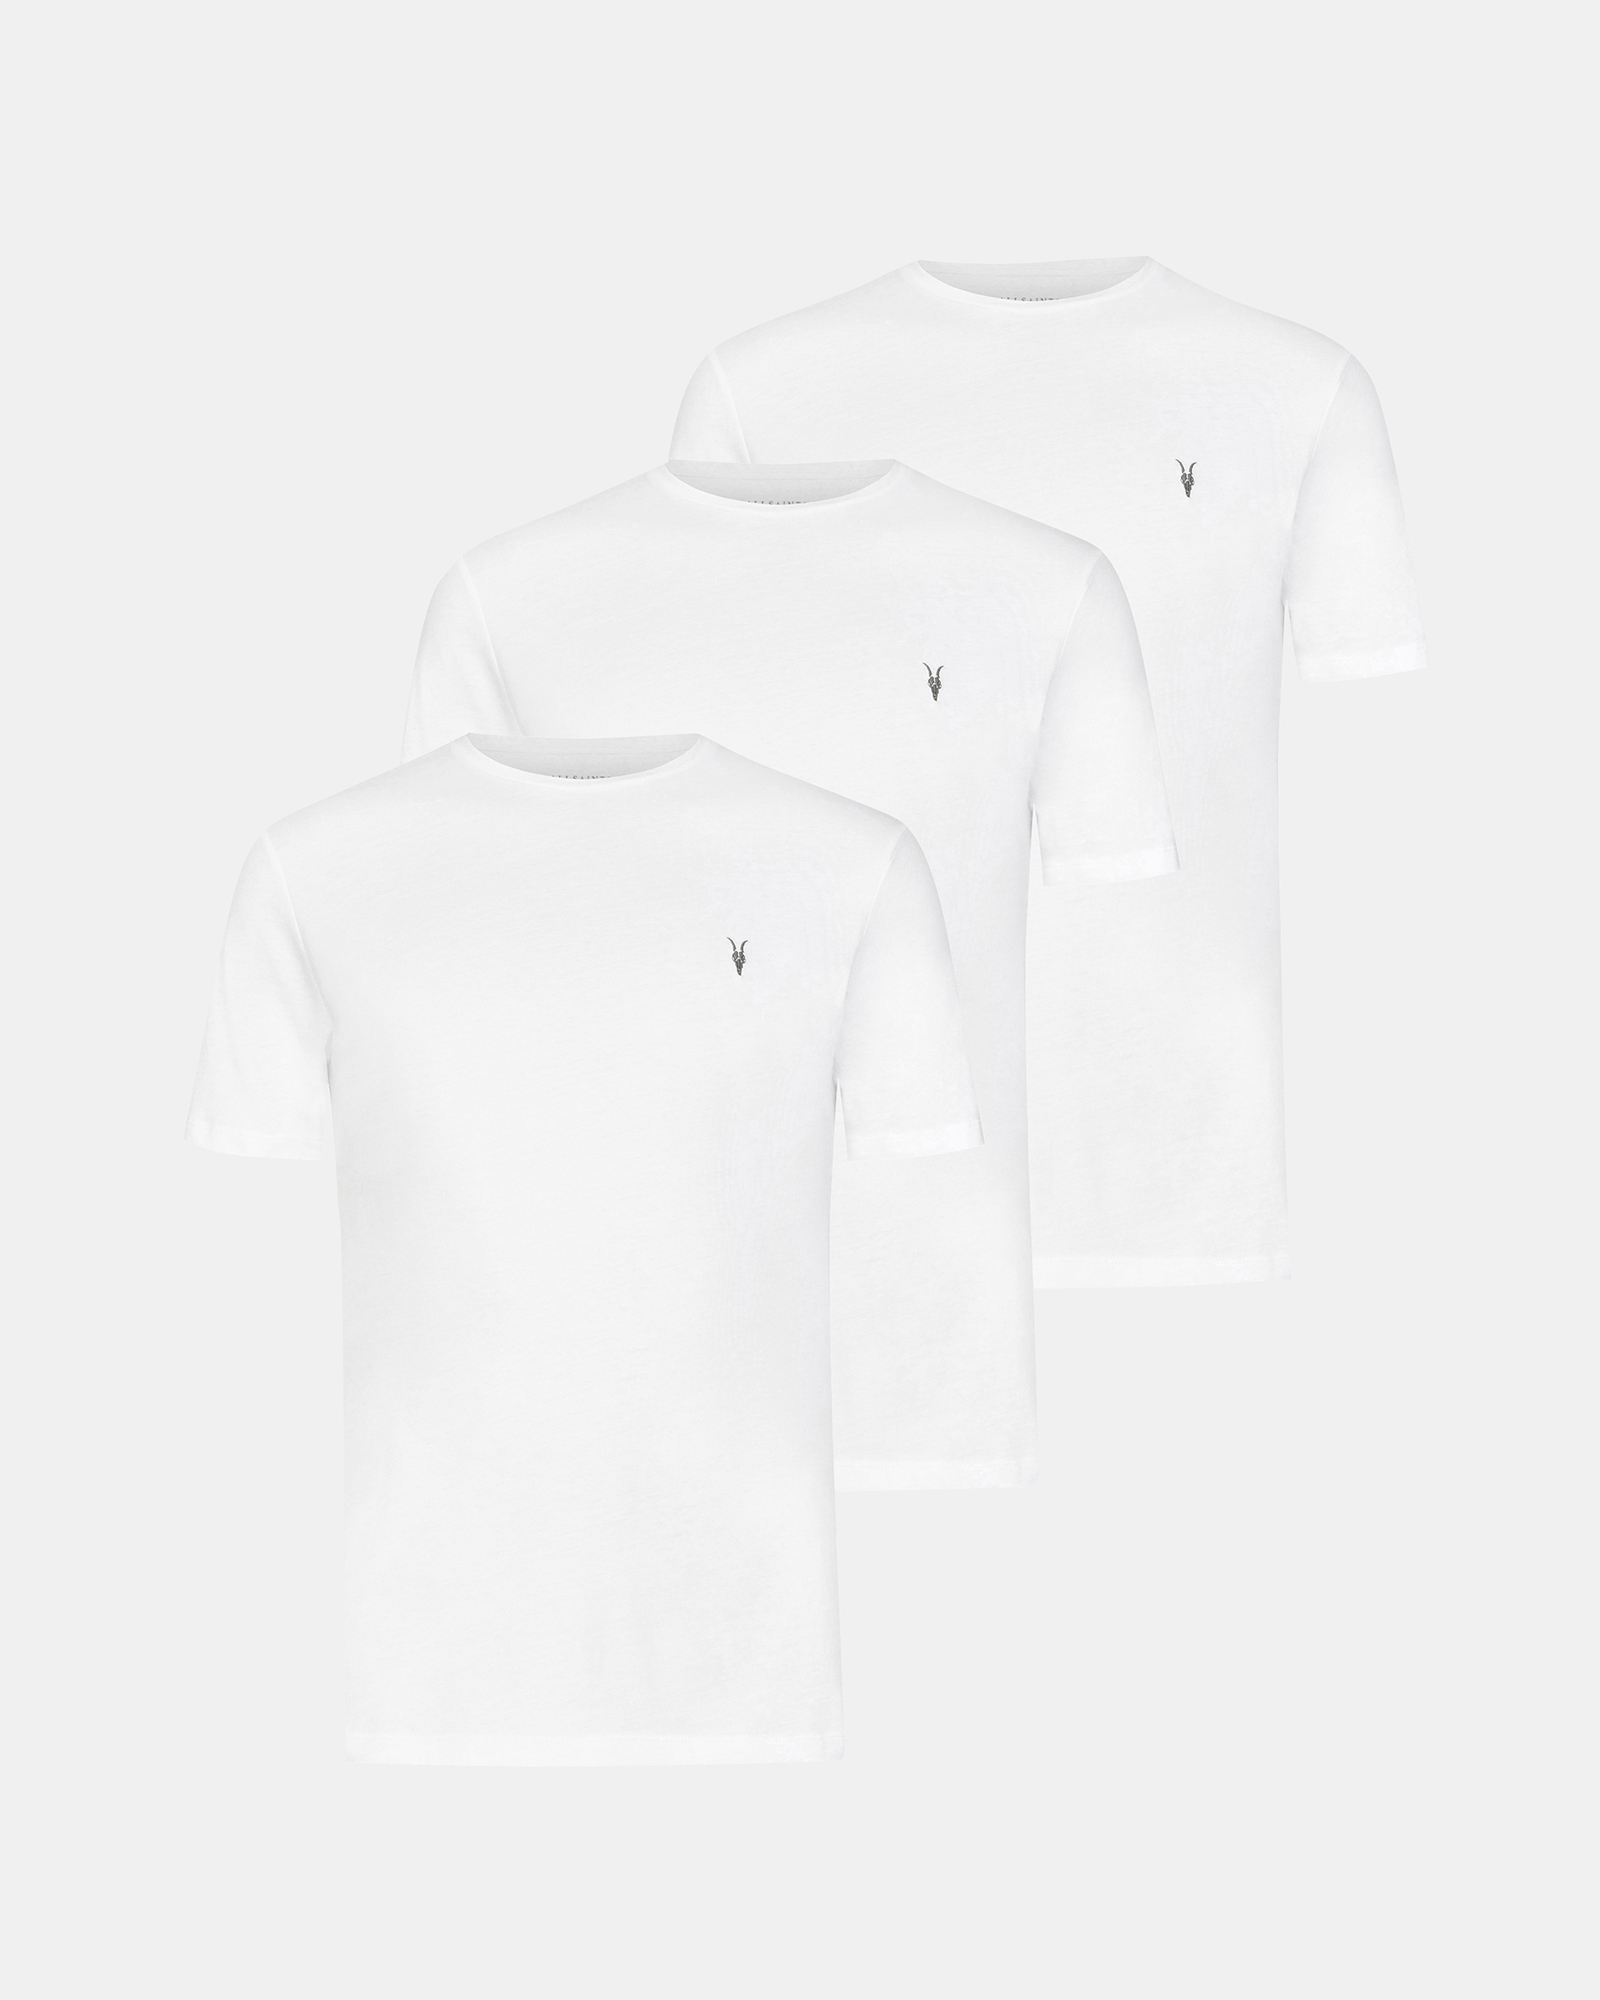 AllSaints Men's Cotton Brace Tonic 3 Pack T-Shirts, White